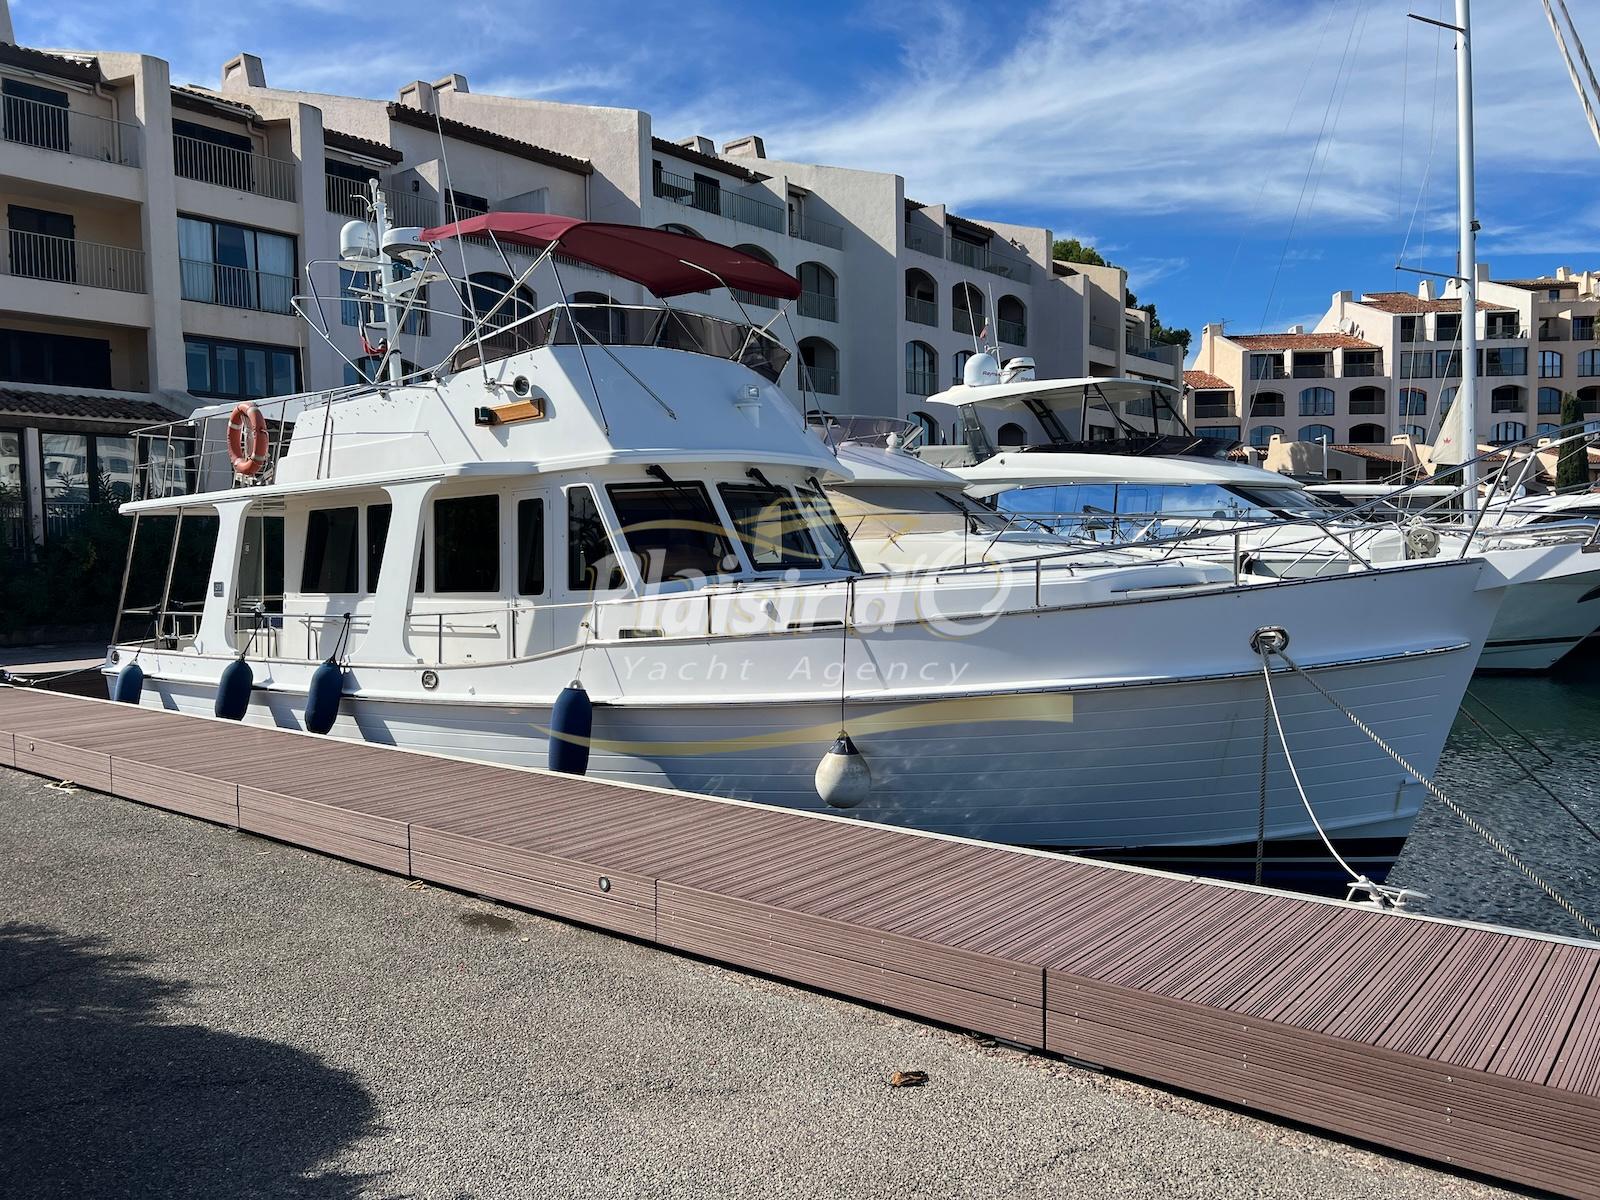 Plaisir d'O - Yacht Agency  vente de bateau d'occasion - Golfe de